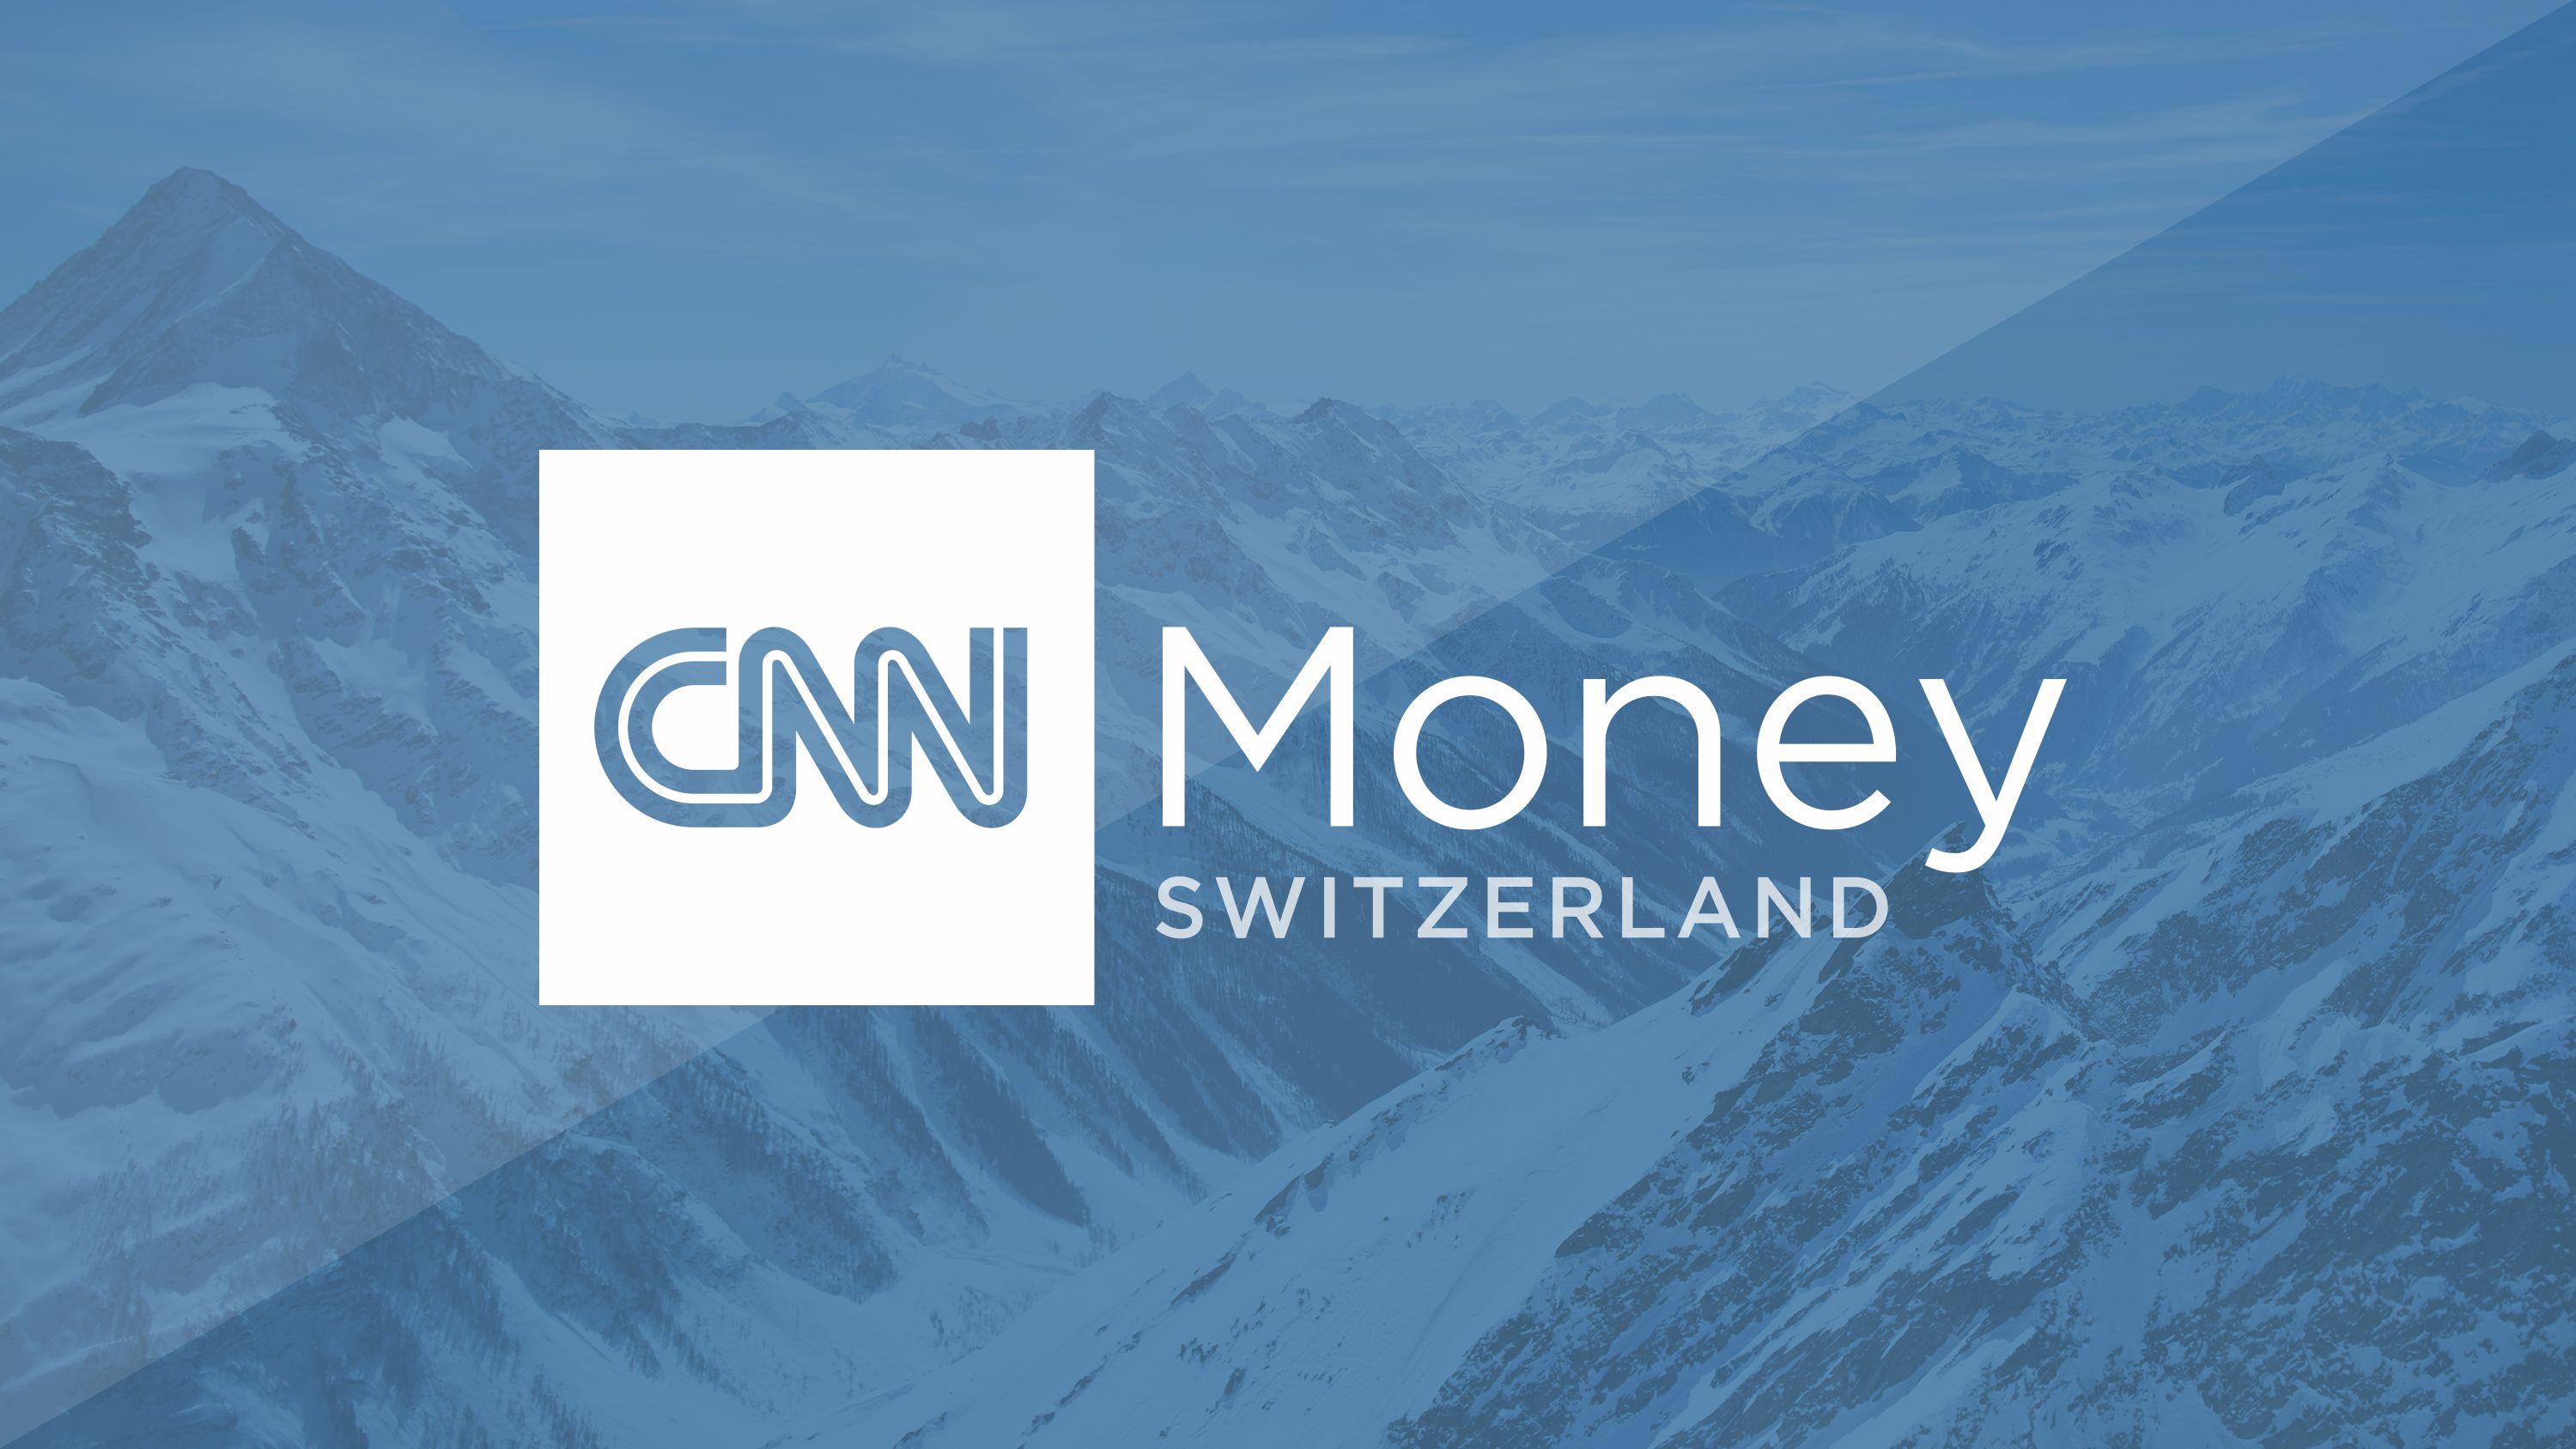 CNN News Logo - Swiss business, financial news and information